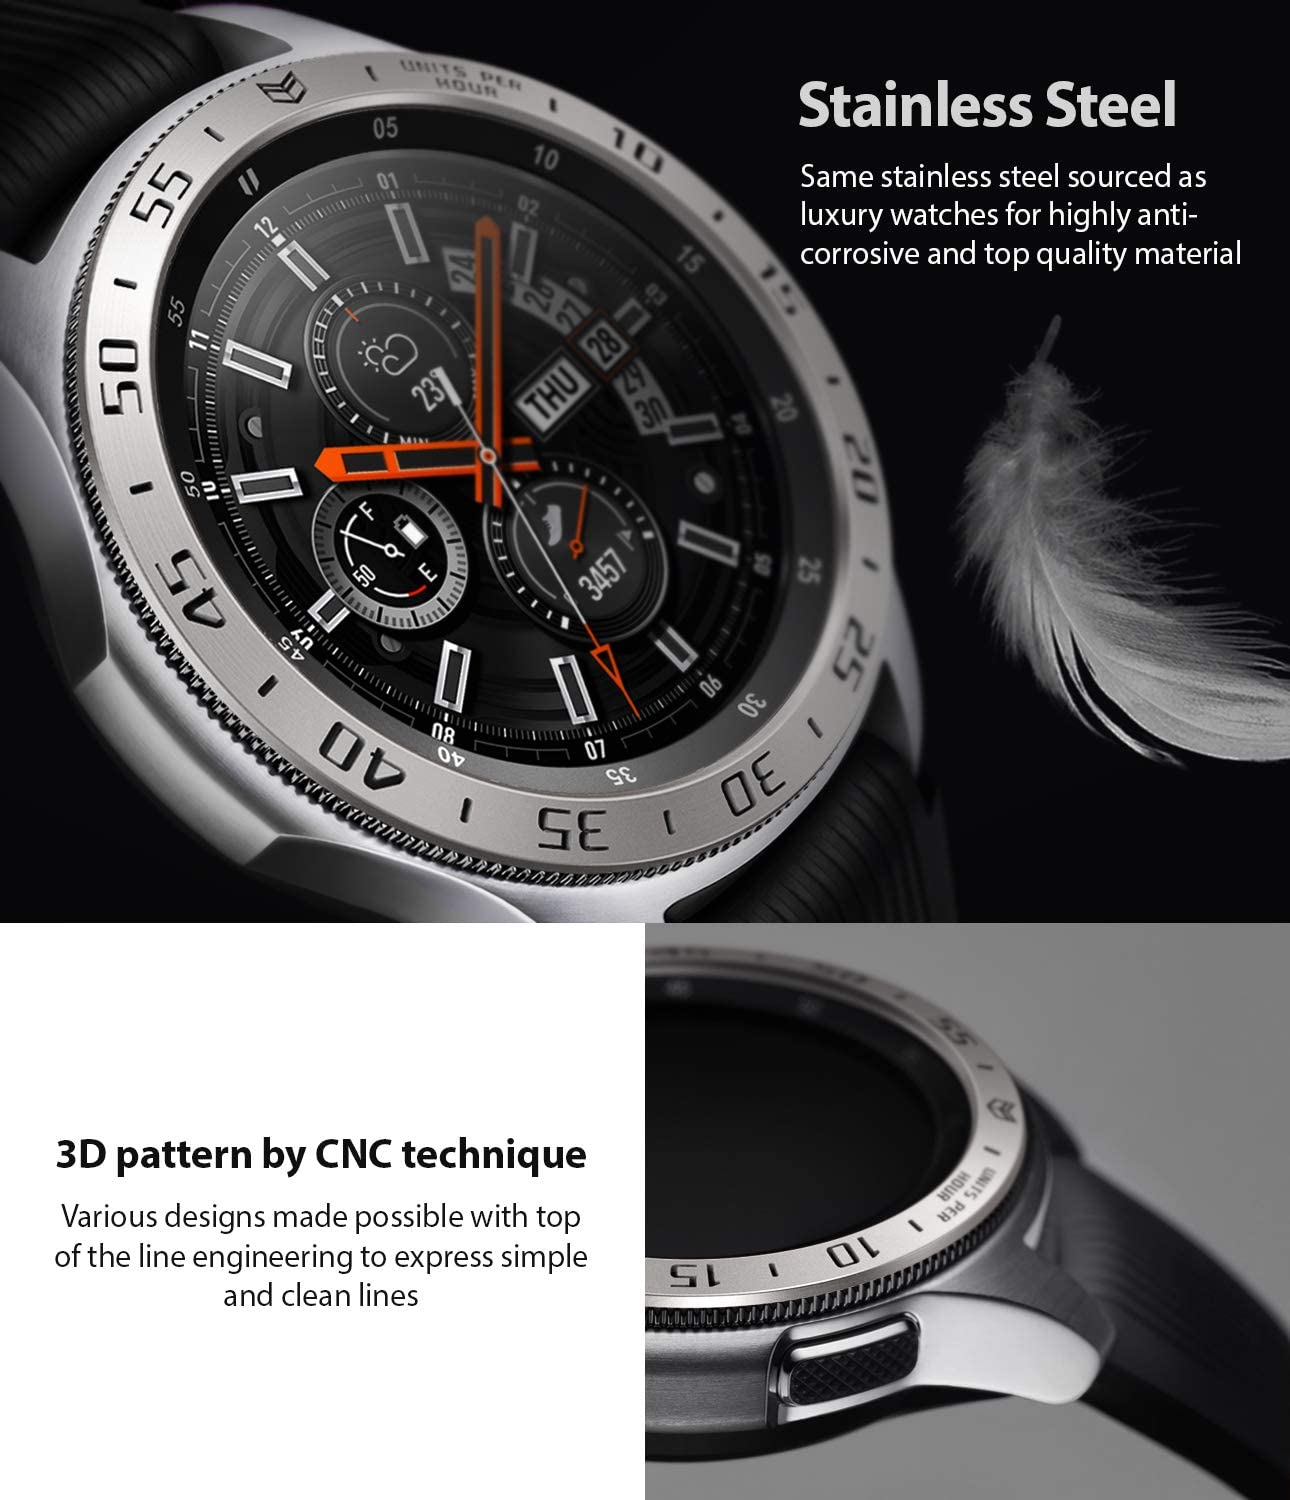 Ringke BEZEL STYLING for Galaxy Watch 46mm/Gear S3, Stainless Steel(GW-46-01) Galaxy Watch Ringke 